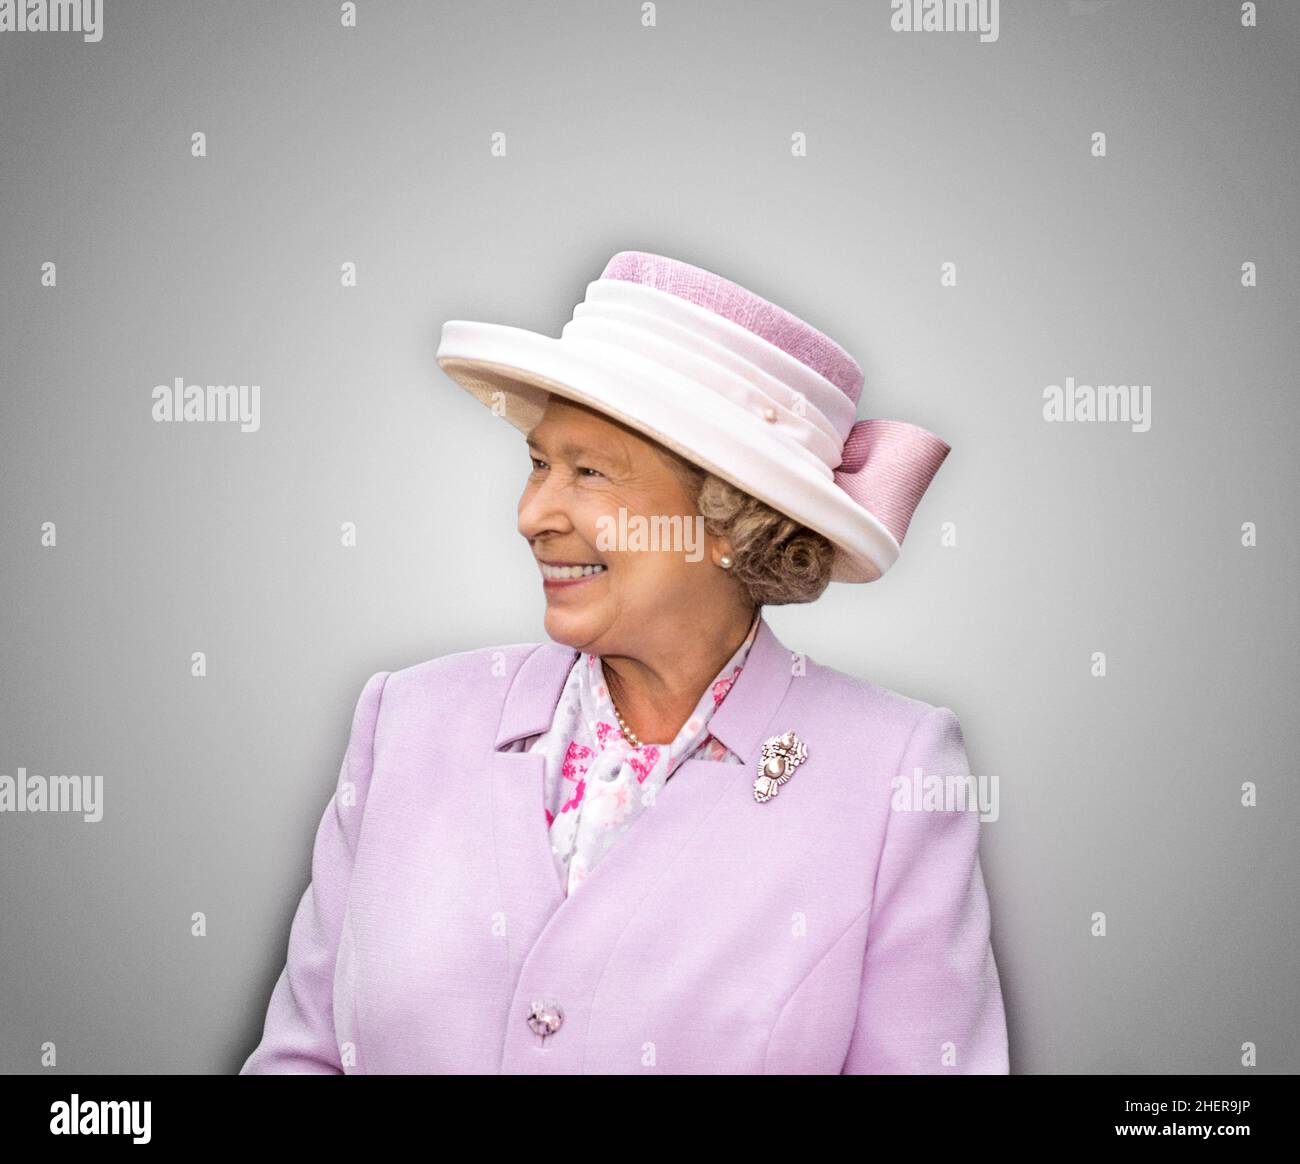 QUEEN ELIZABETH II Portrait lächelndes Cut-out-Verfahren Halblanges Porträt eines glücklichen lächelnden Dreiviertelansicht von Königin Elizabeth II Ausschnitt auf einem neutralen, schlichten Hintergrund Auftragsbild fotografiert von © Ian Shaw Stockfoto